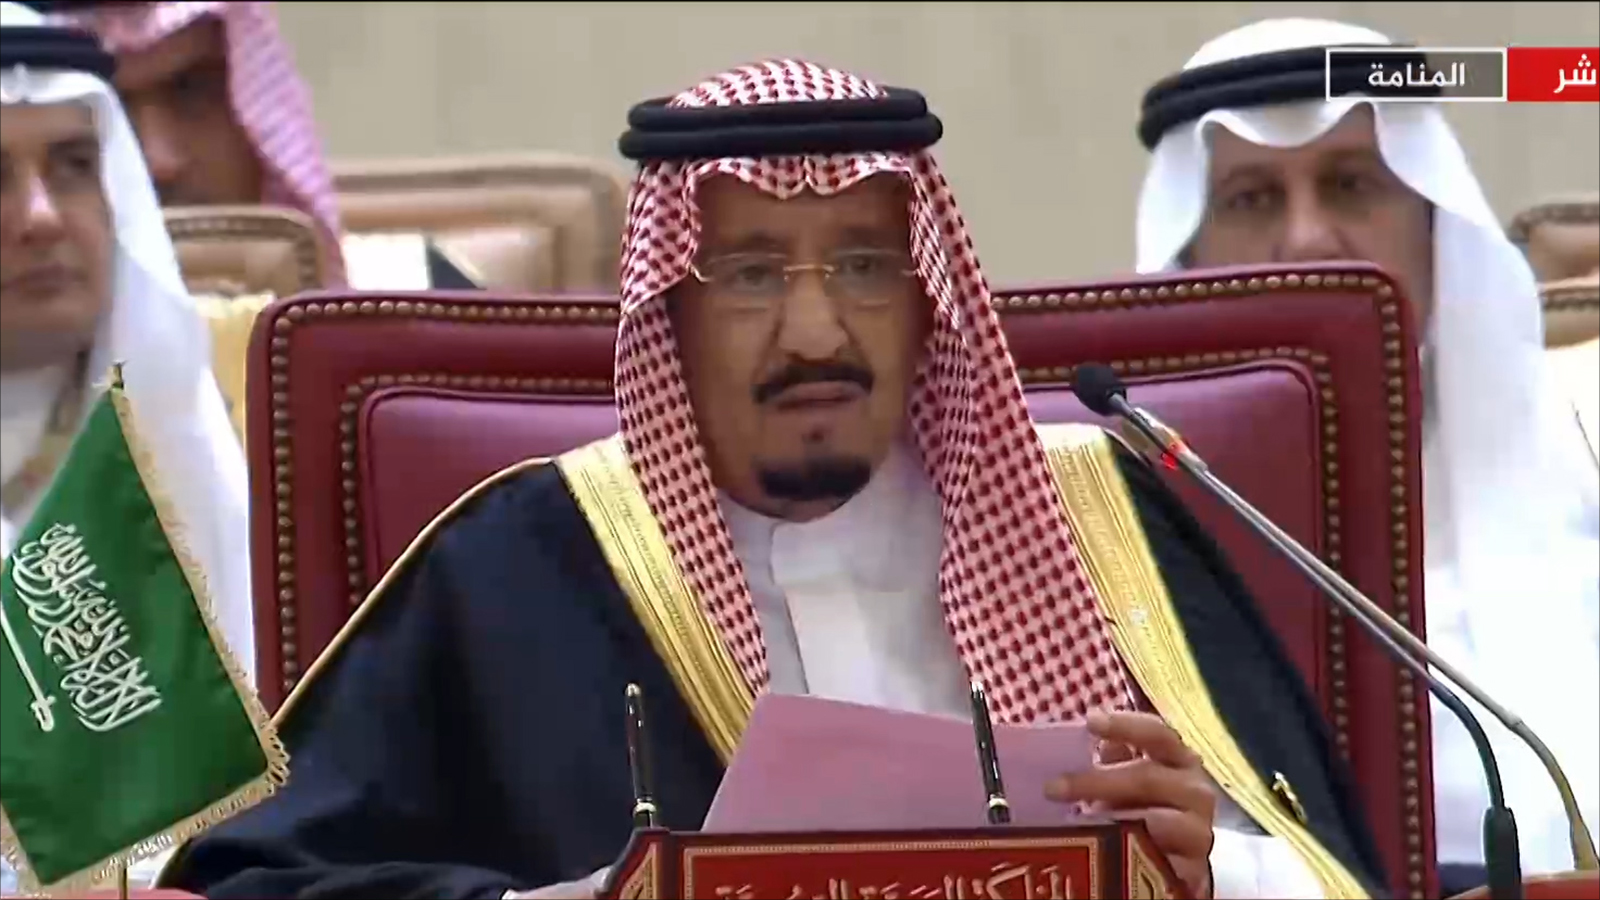 ‪الملك السعودي: الواقع المؤلم في المنطقة نتيجة حتمية للتحالف بين الإرهاب والتدخلات‬ (الجزيرة)